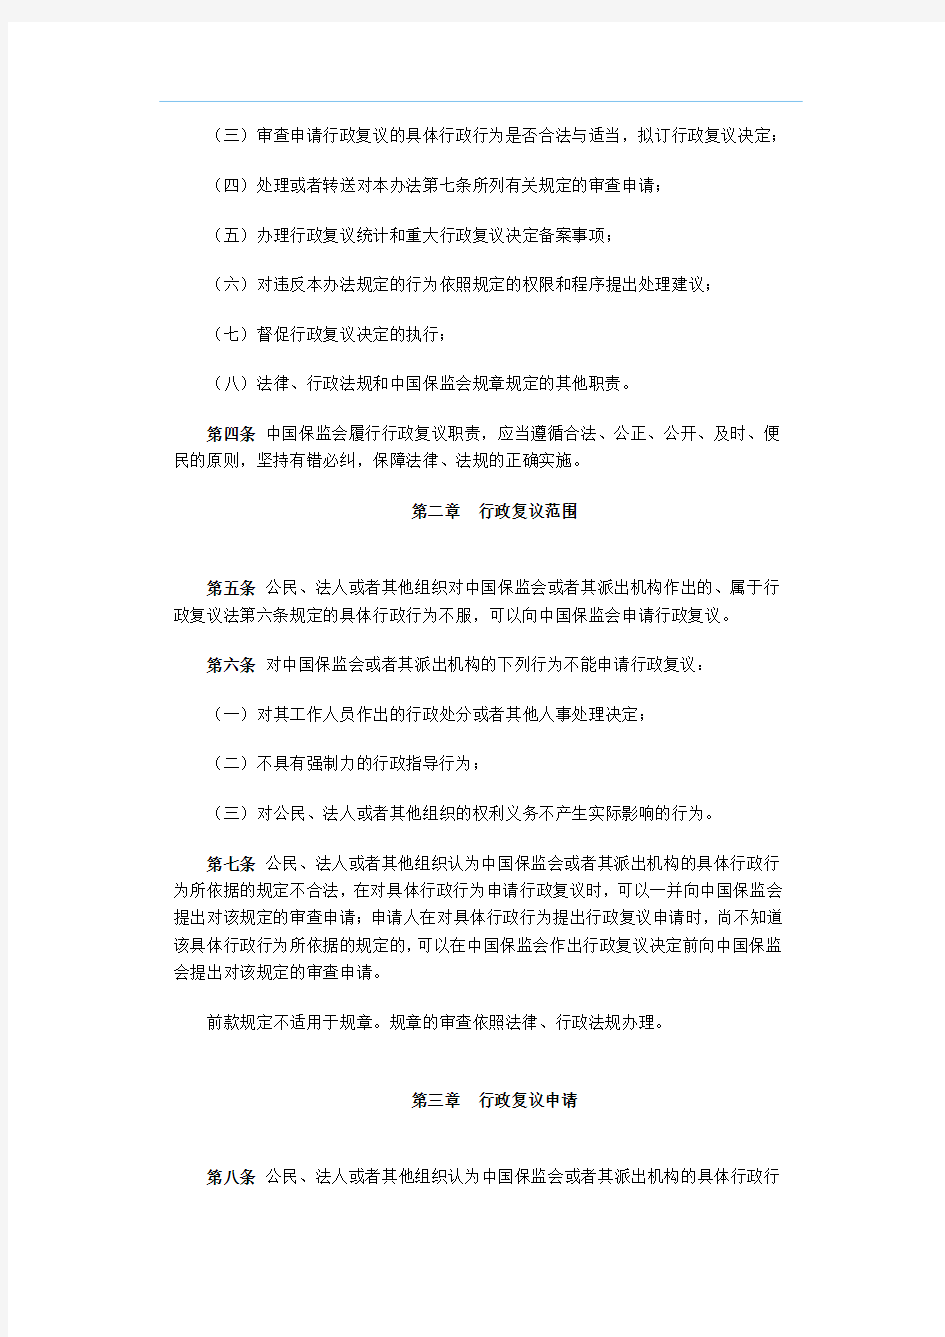 中国保险监督管理委员会令2010年第1号《中国保险监督管理委员会行政复议办法》